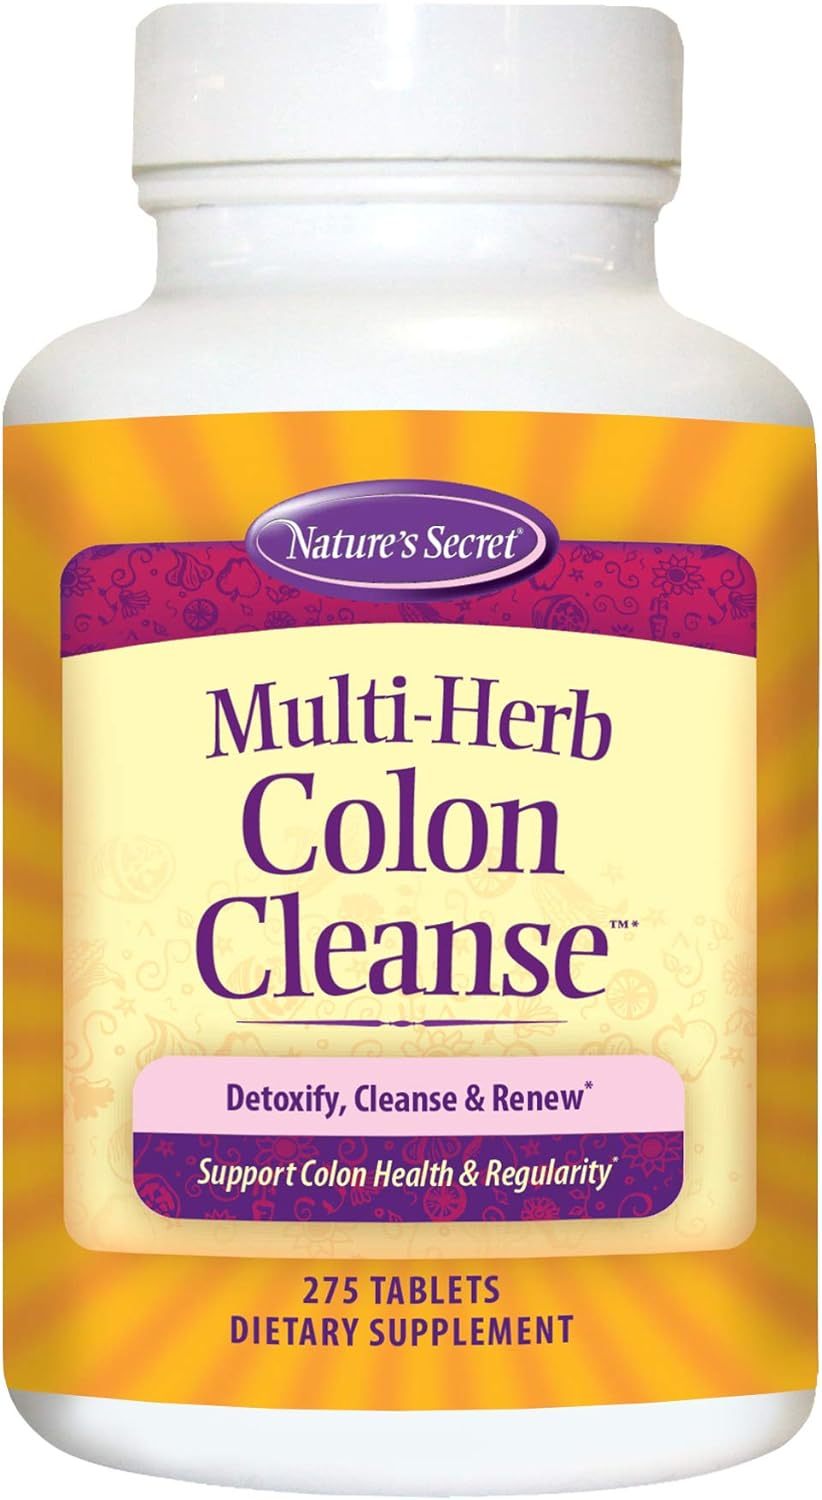 Natures Secret Multi-Herb Colon Cleanse, 275 Tablets